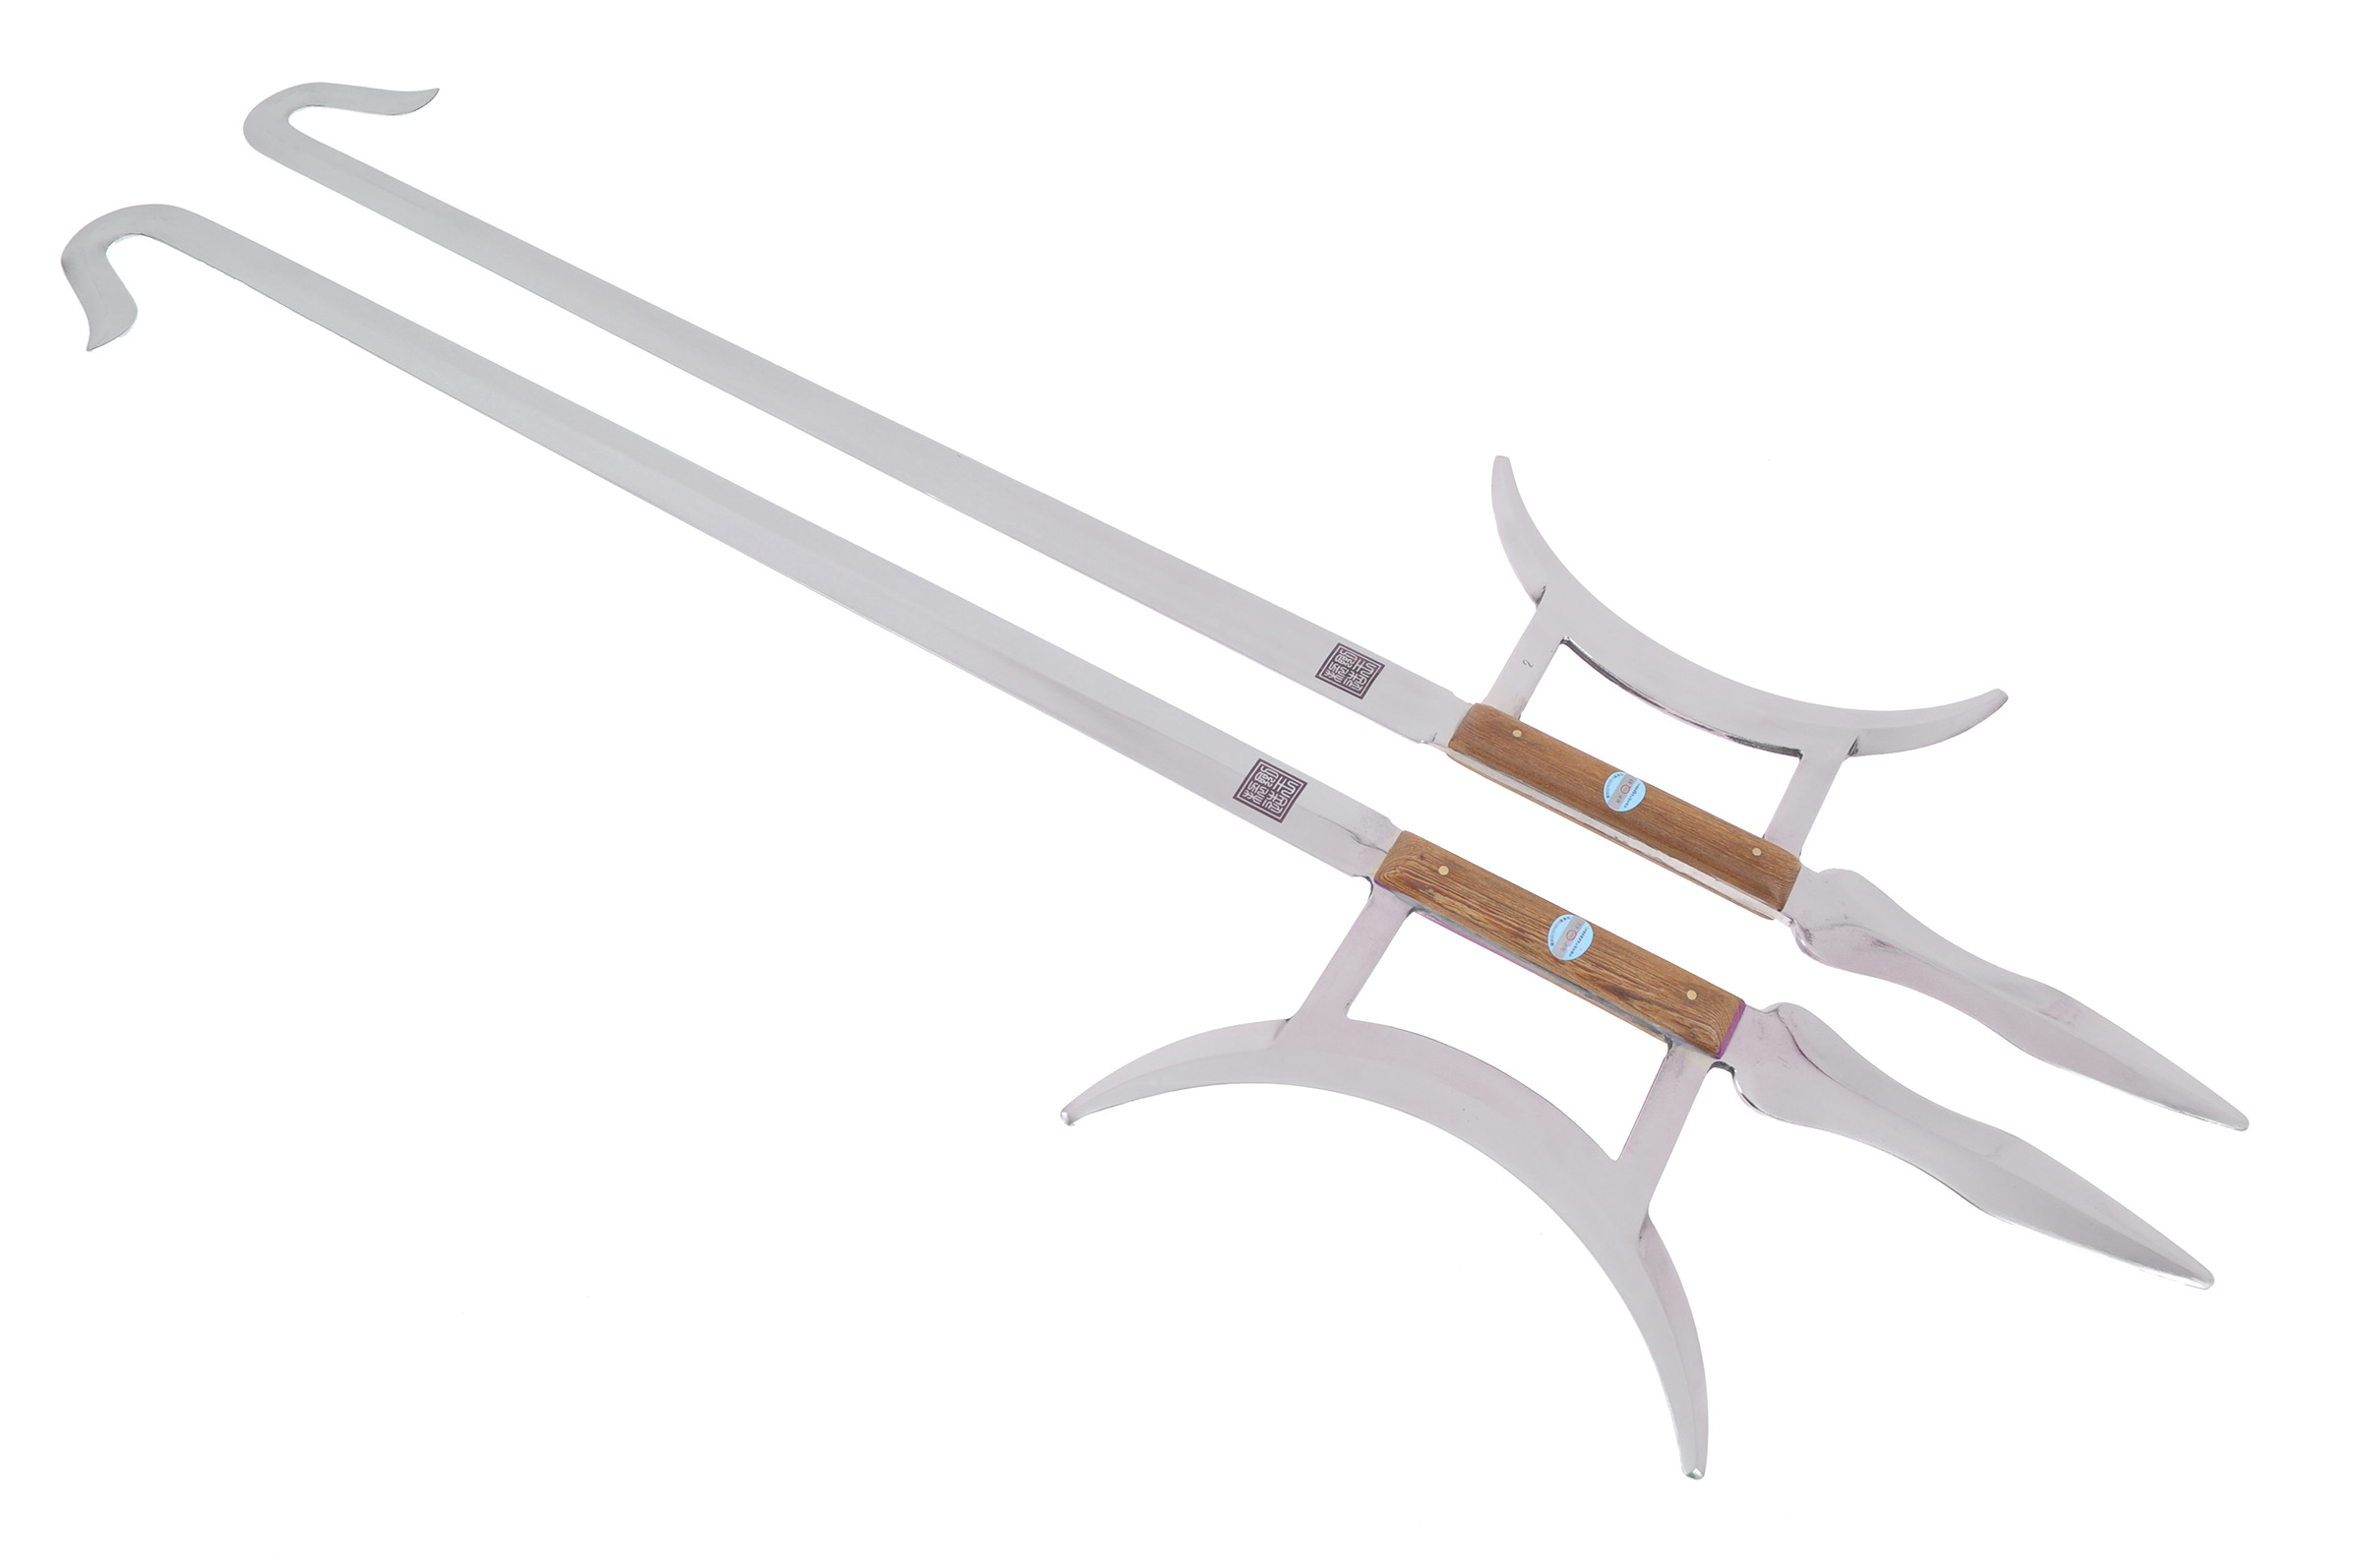 Black Chinese Hook Swords - Stainless Steel Hook Sword - Chinese